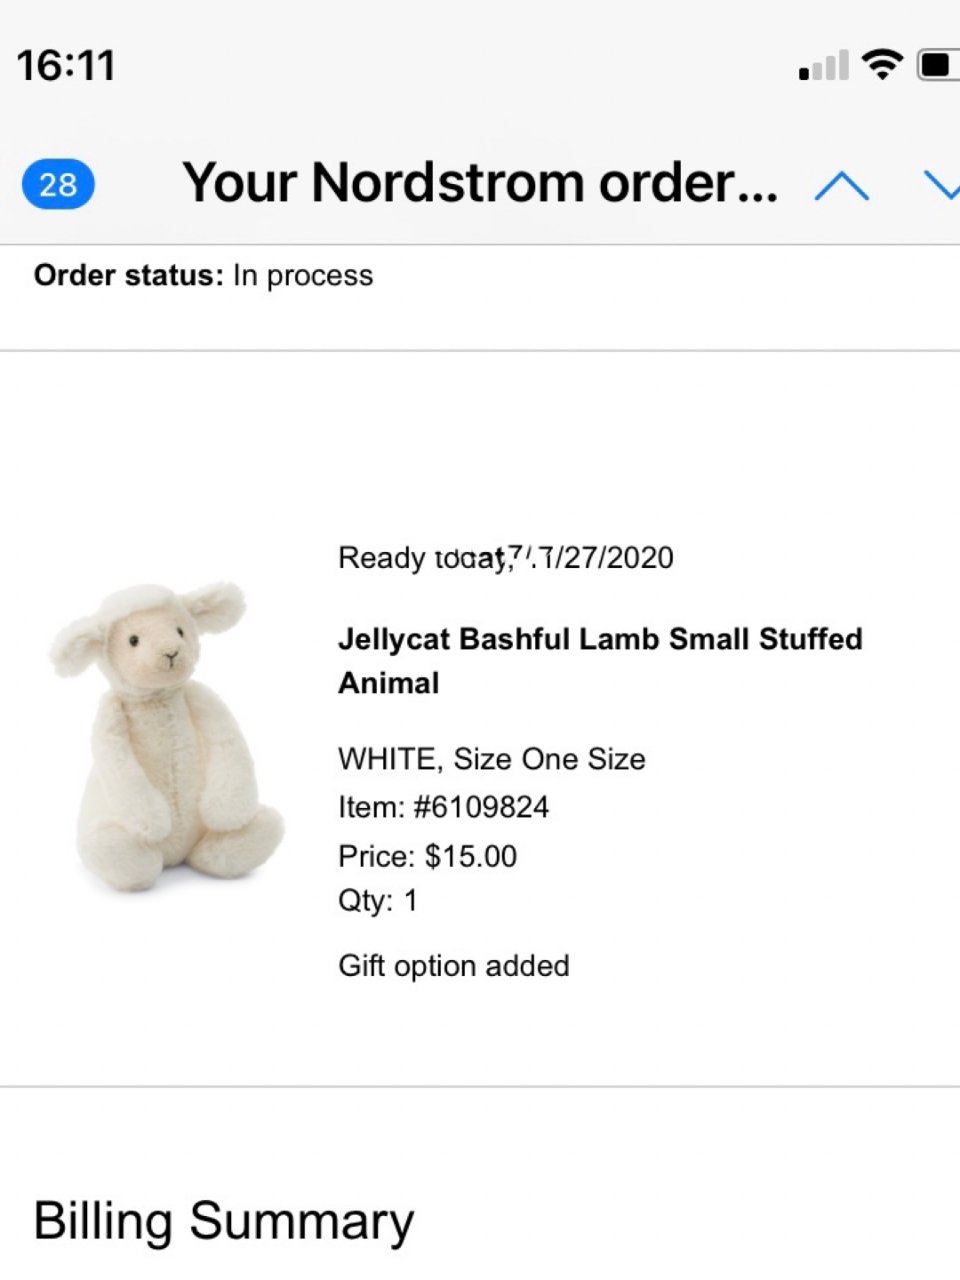 Jellycat Bashful Lamb Small Stuffed Anim